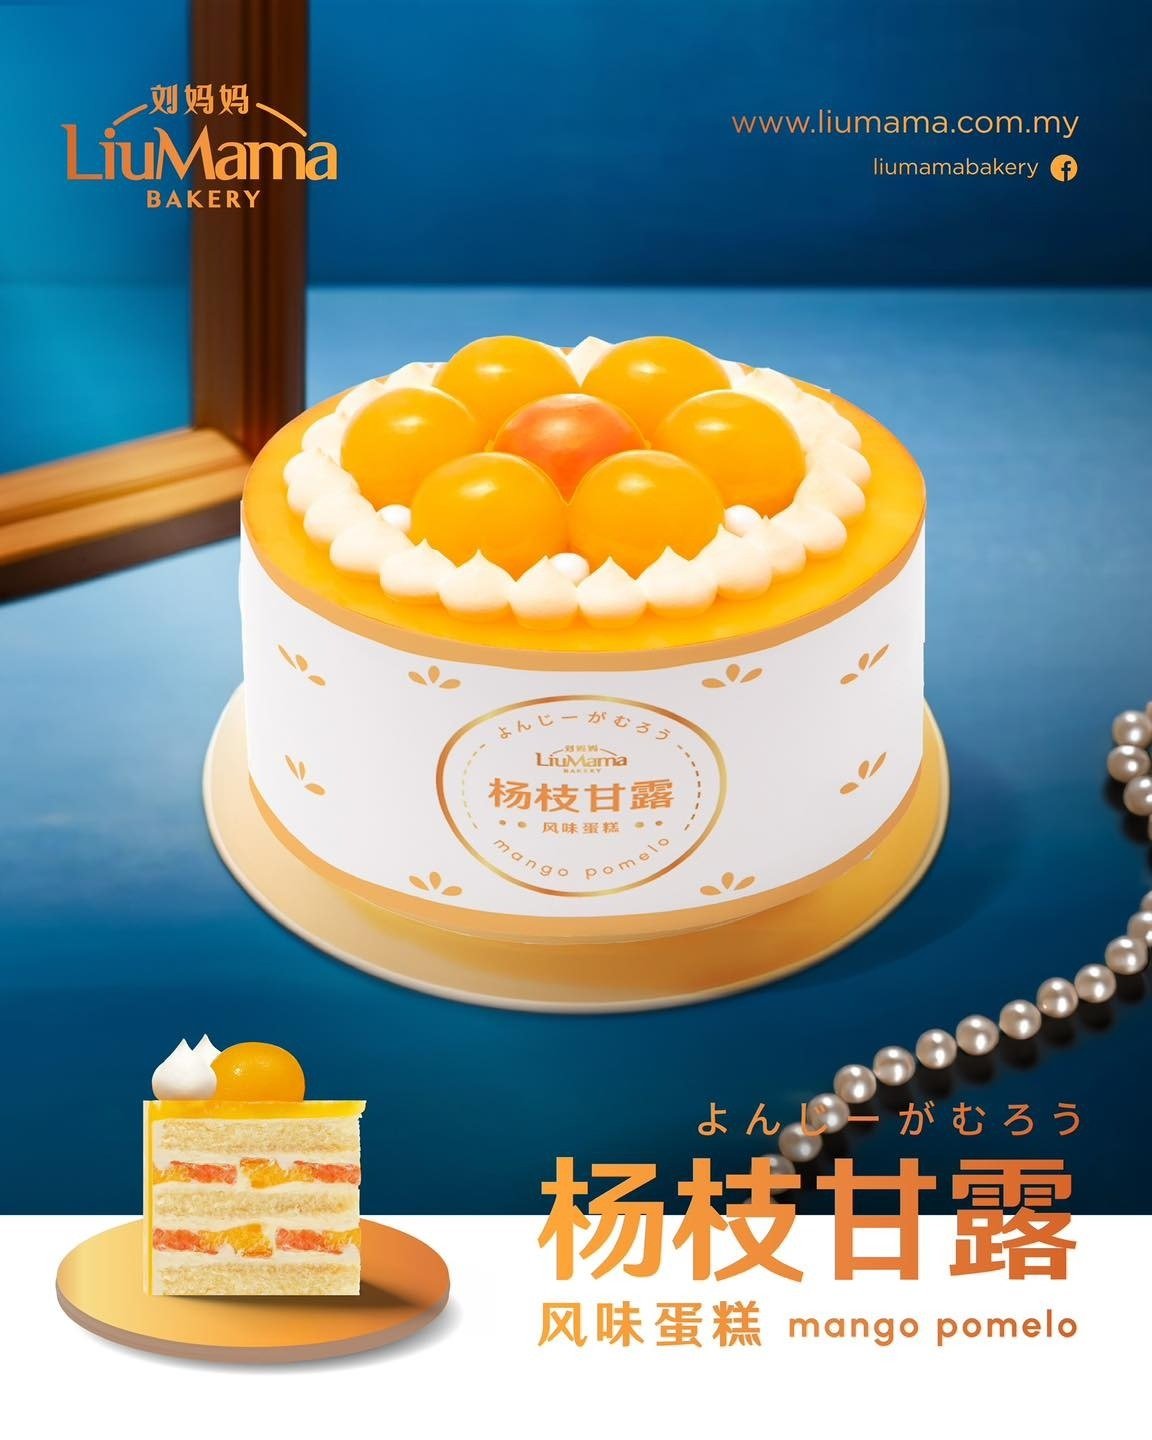 刘妈妈饼家今年推出新口味的母亲节蛋糕－杨枝甘露风味蛋糕。